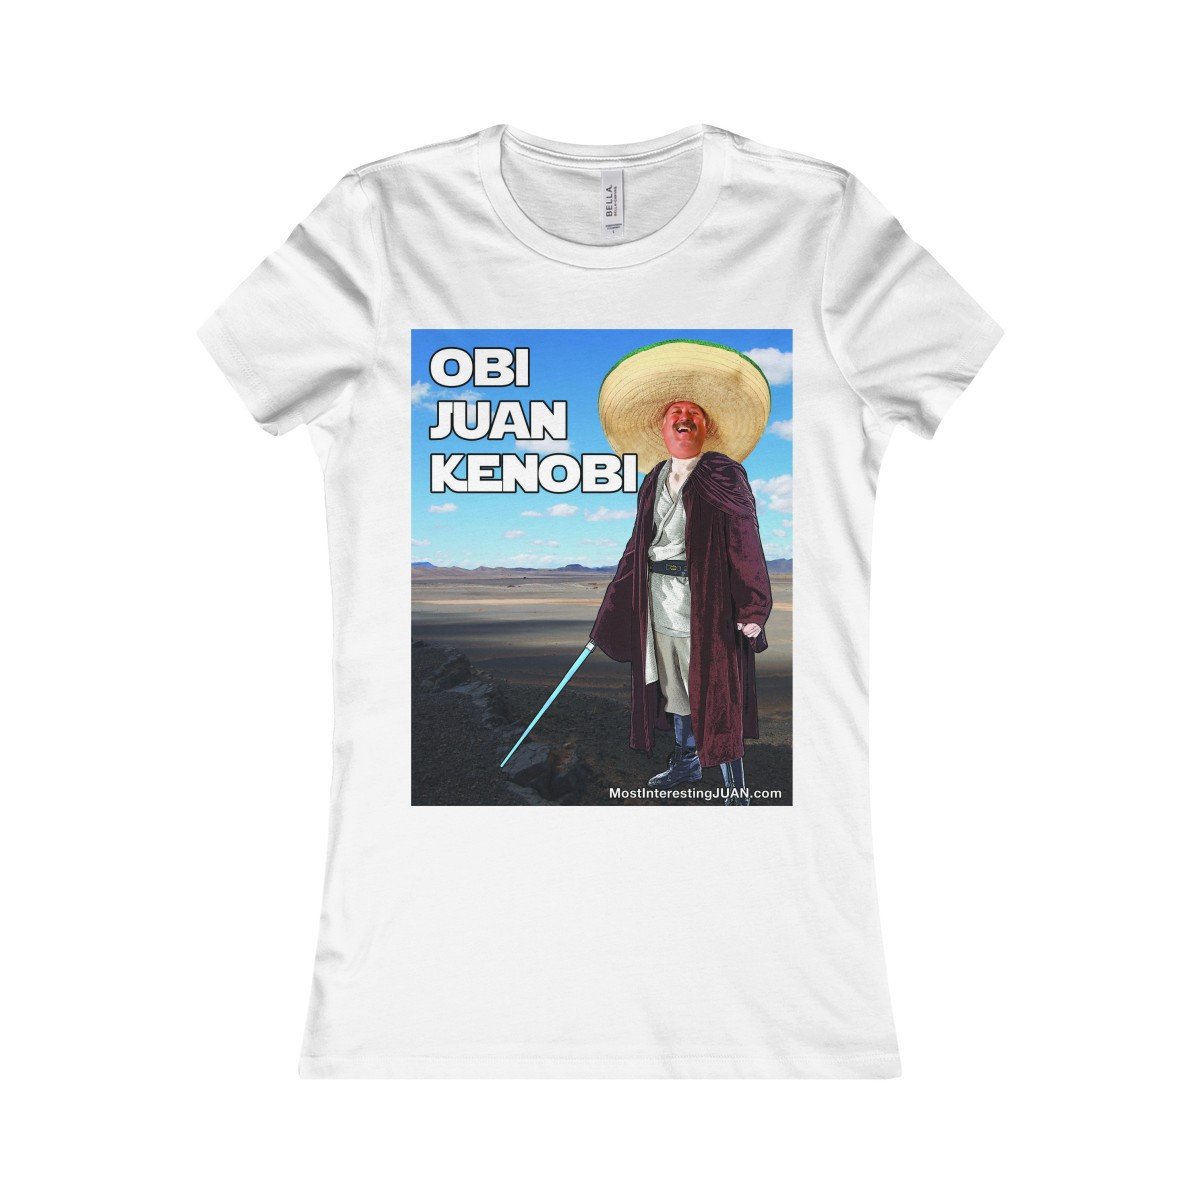 Obi Juan Kenobi - Women's T-shirt